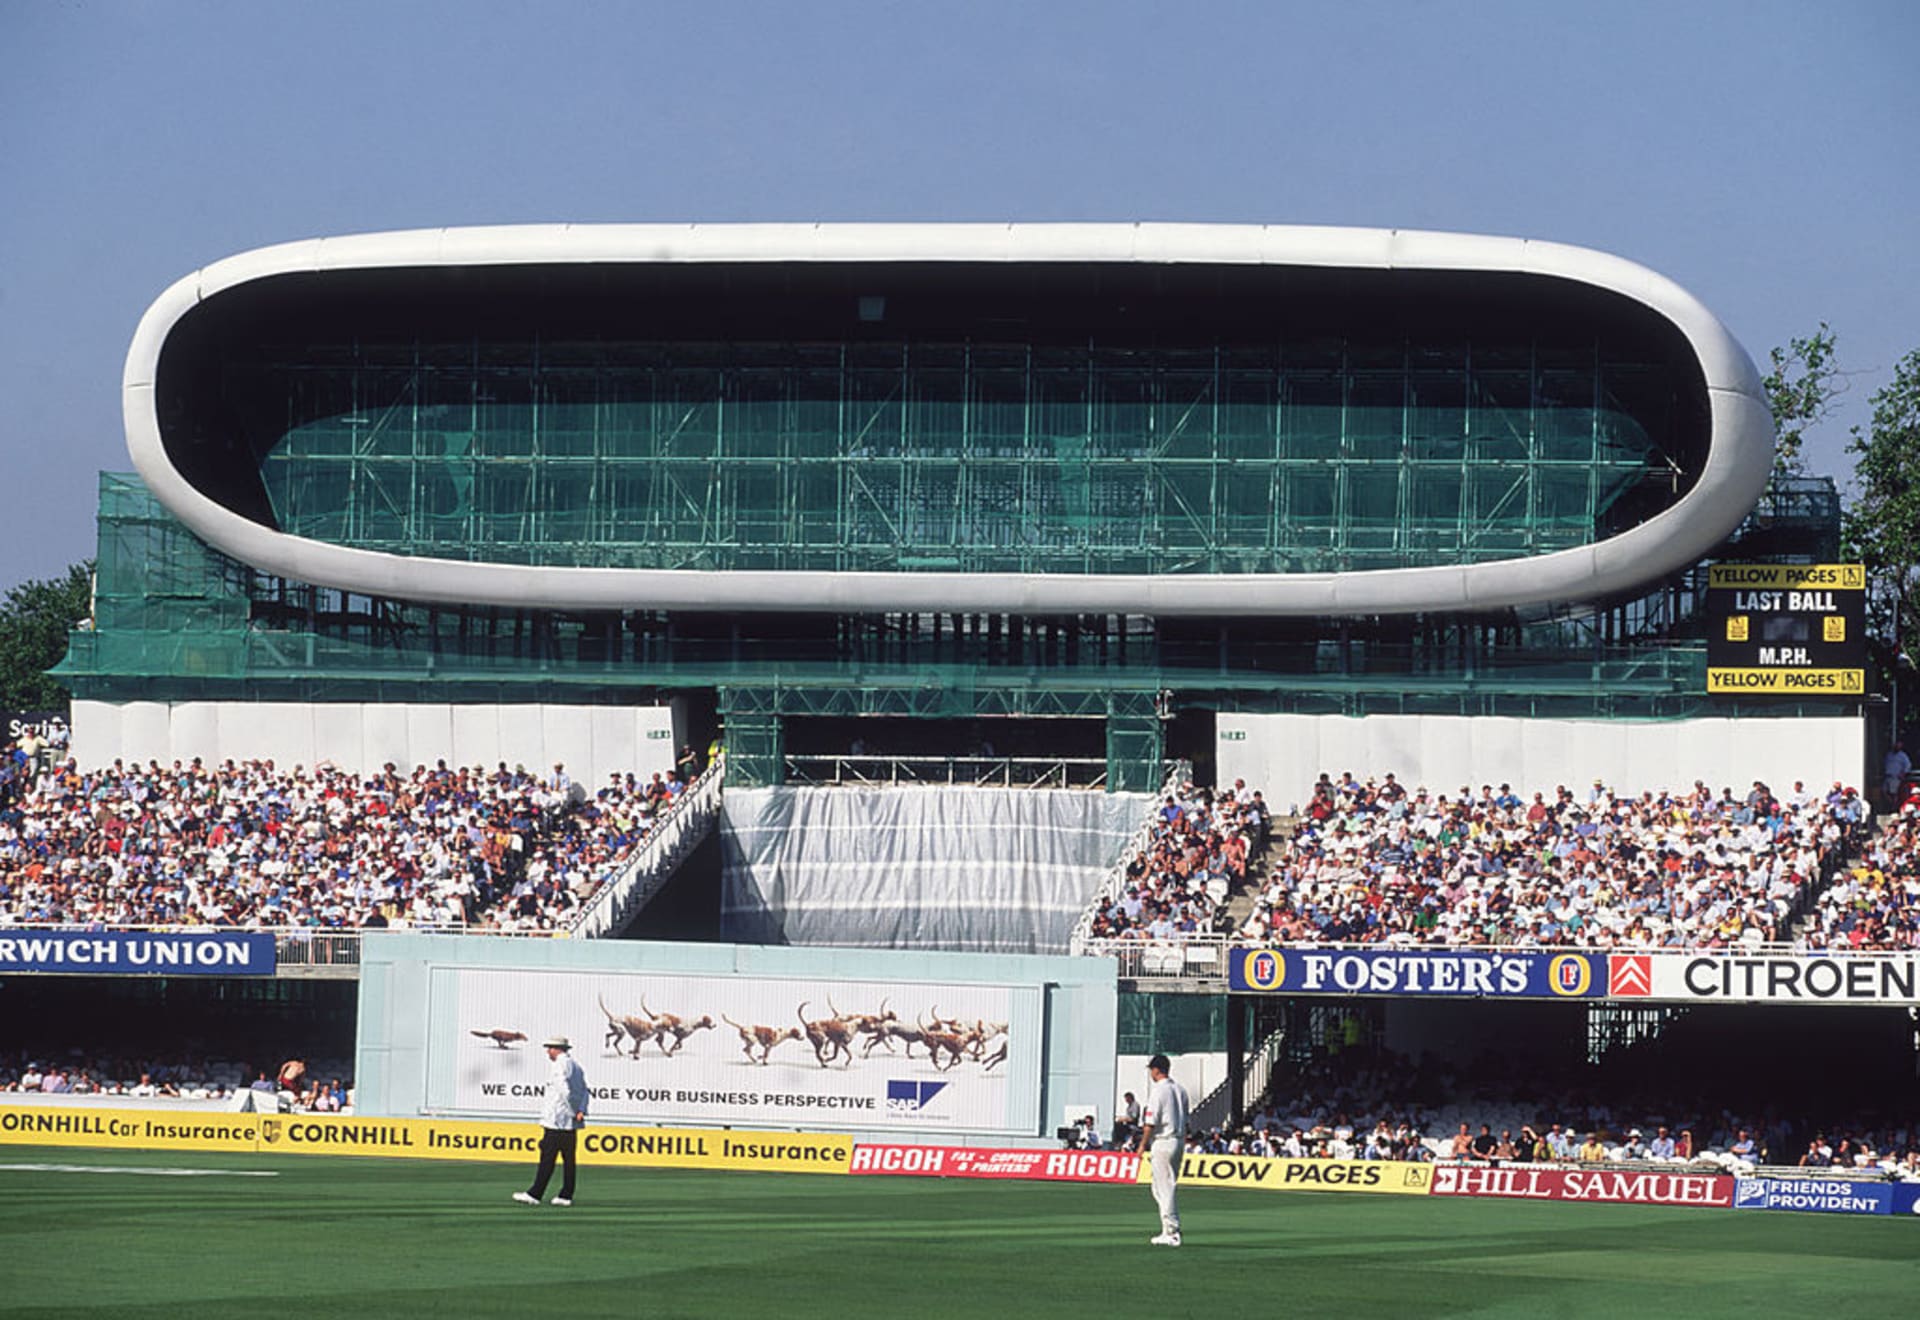 Lord's Media Centre, Londýn (1994) – tiskové centrum na londýnském kriketovém stadionu. Oceněno cenou Stirling Prize